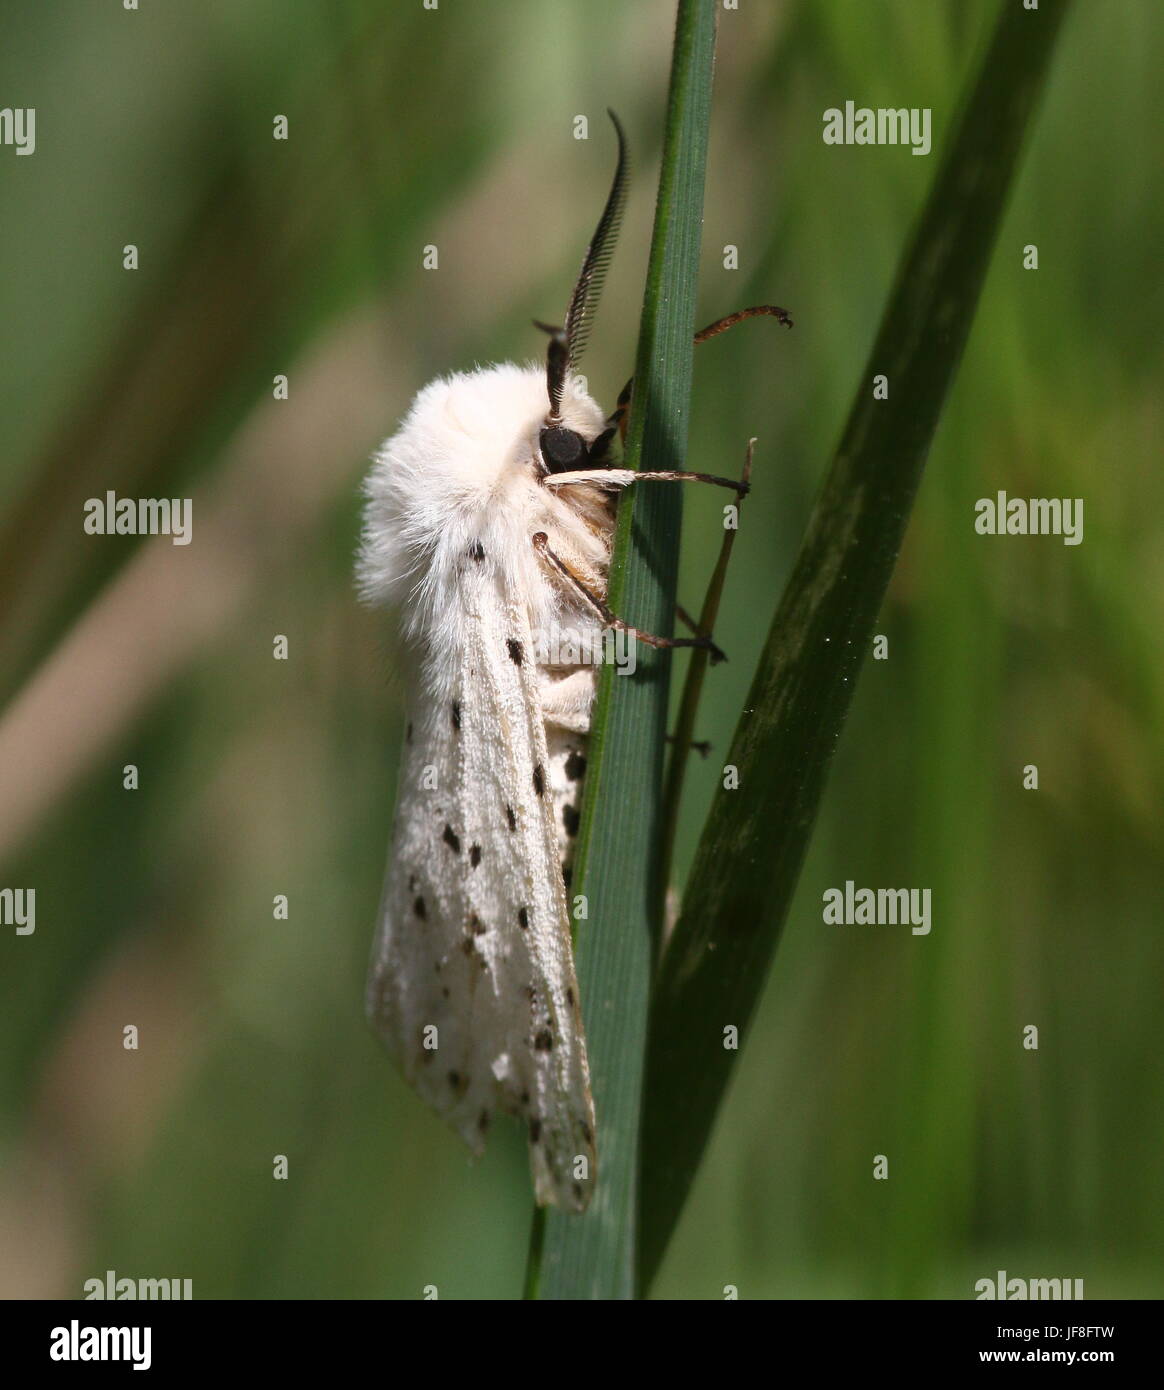 European White ermine moth (Spilosoma lubricipeda) Stock Photo